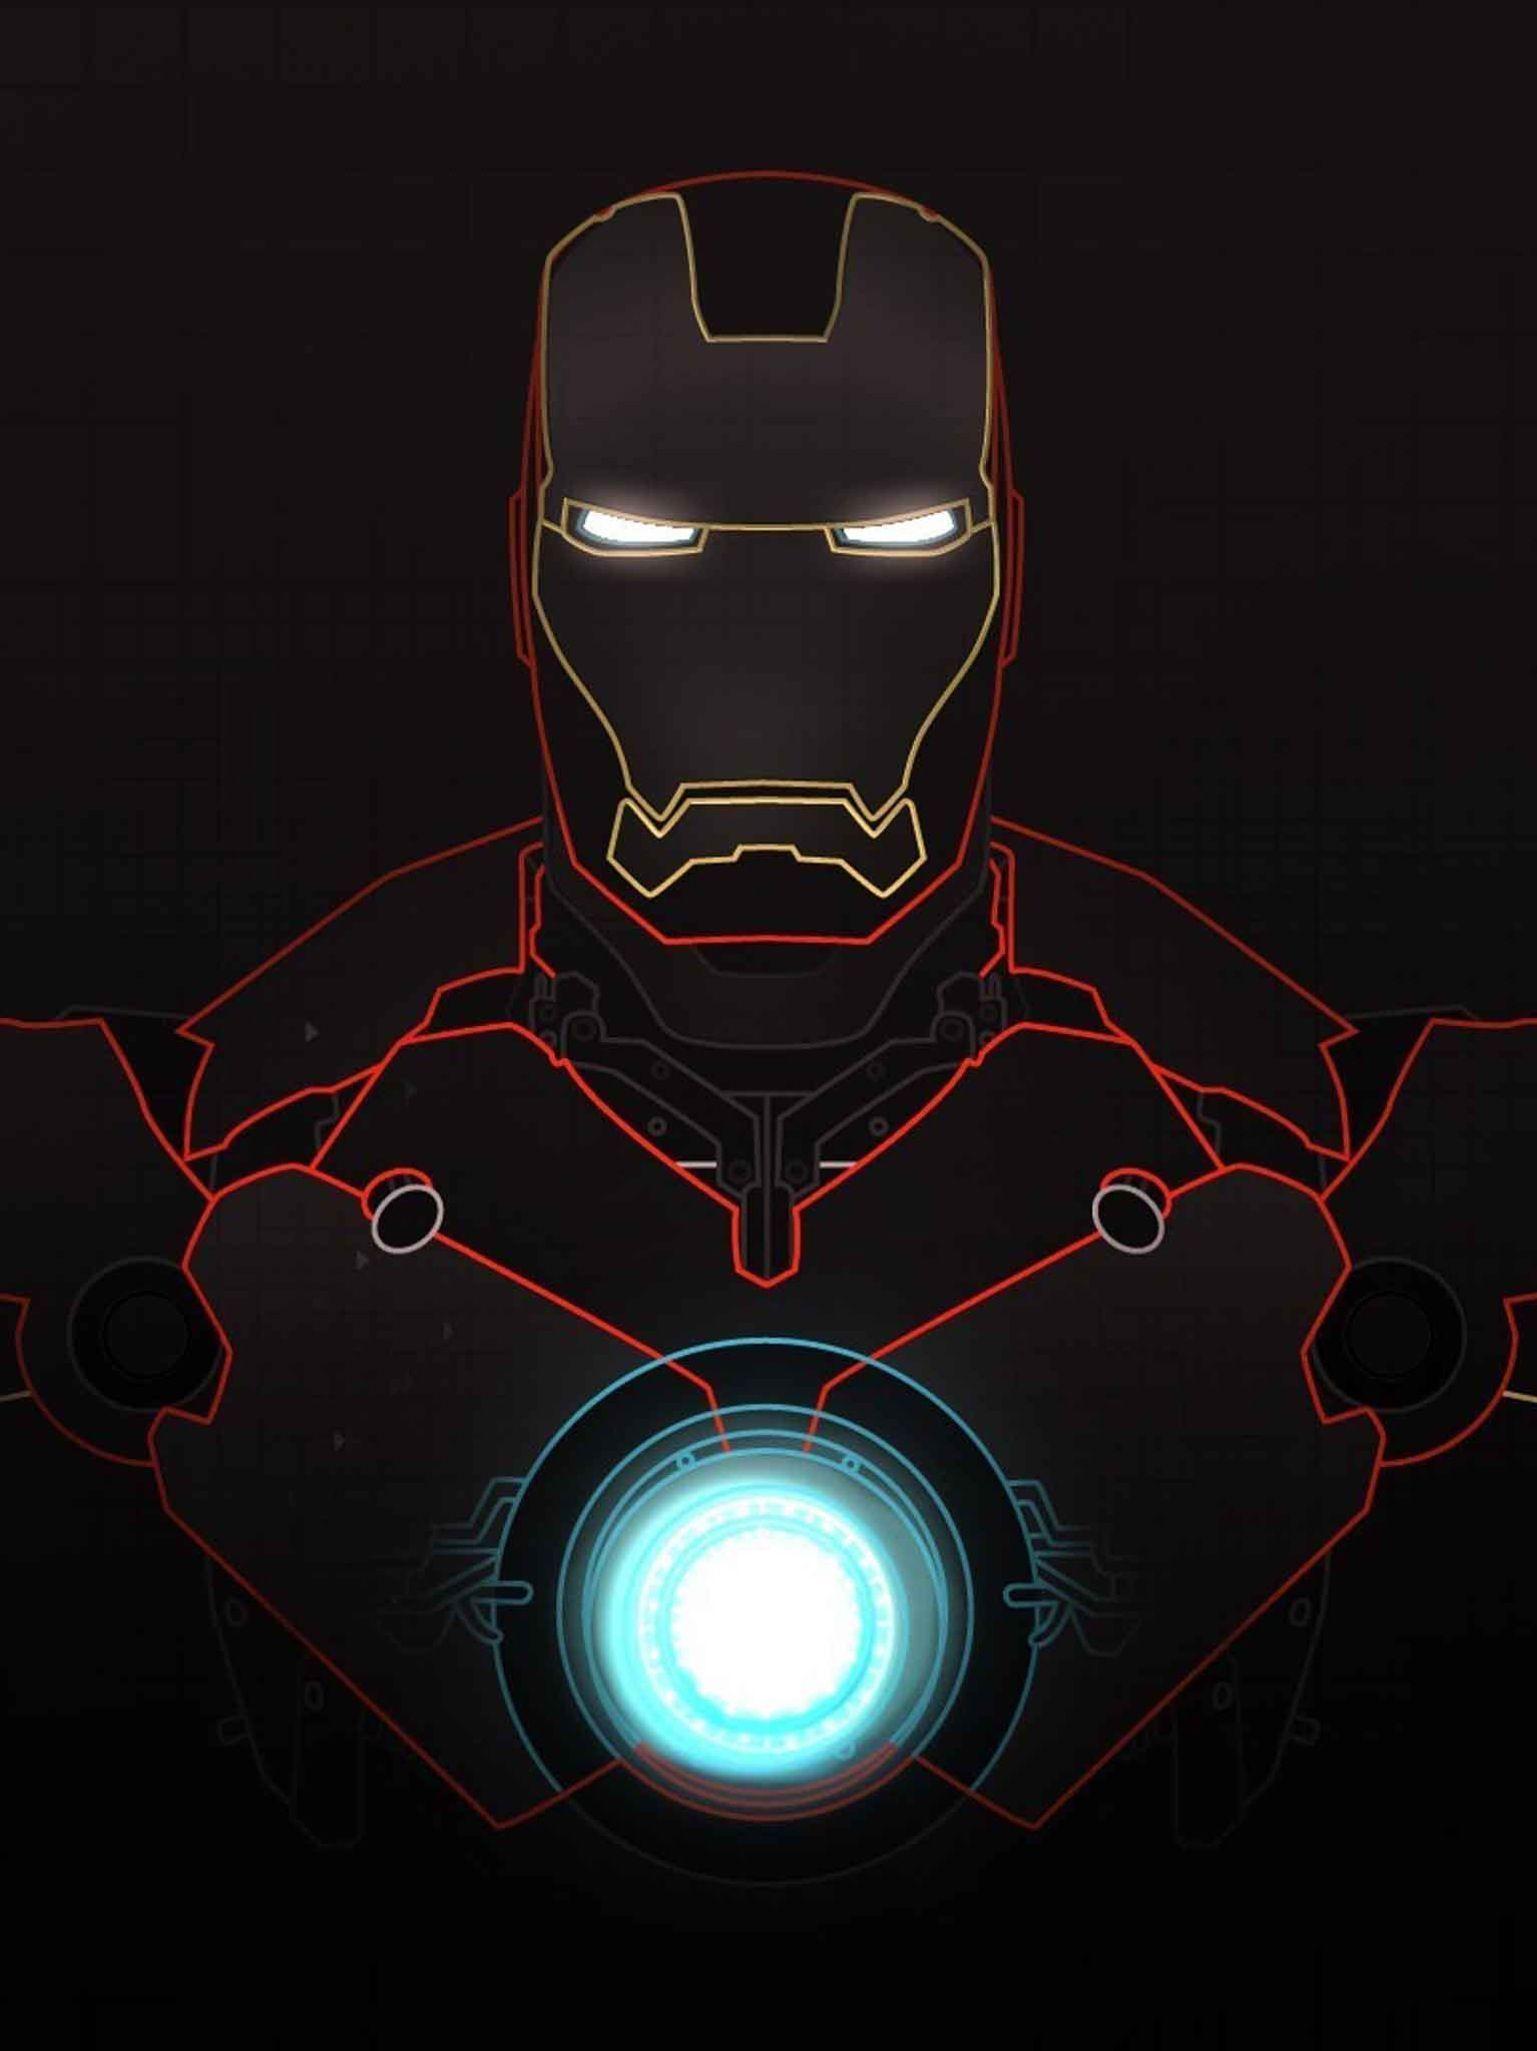 Cool Iron Man images.jpg